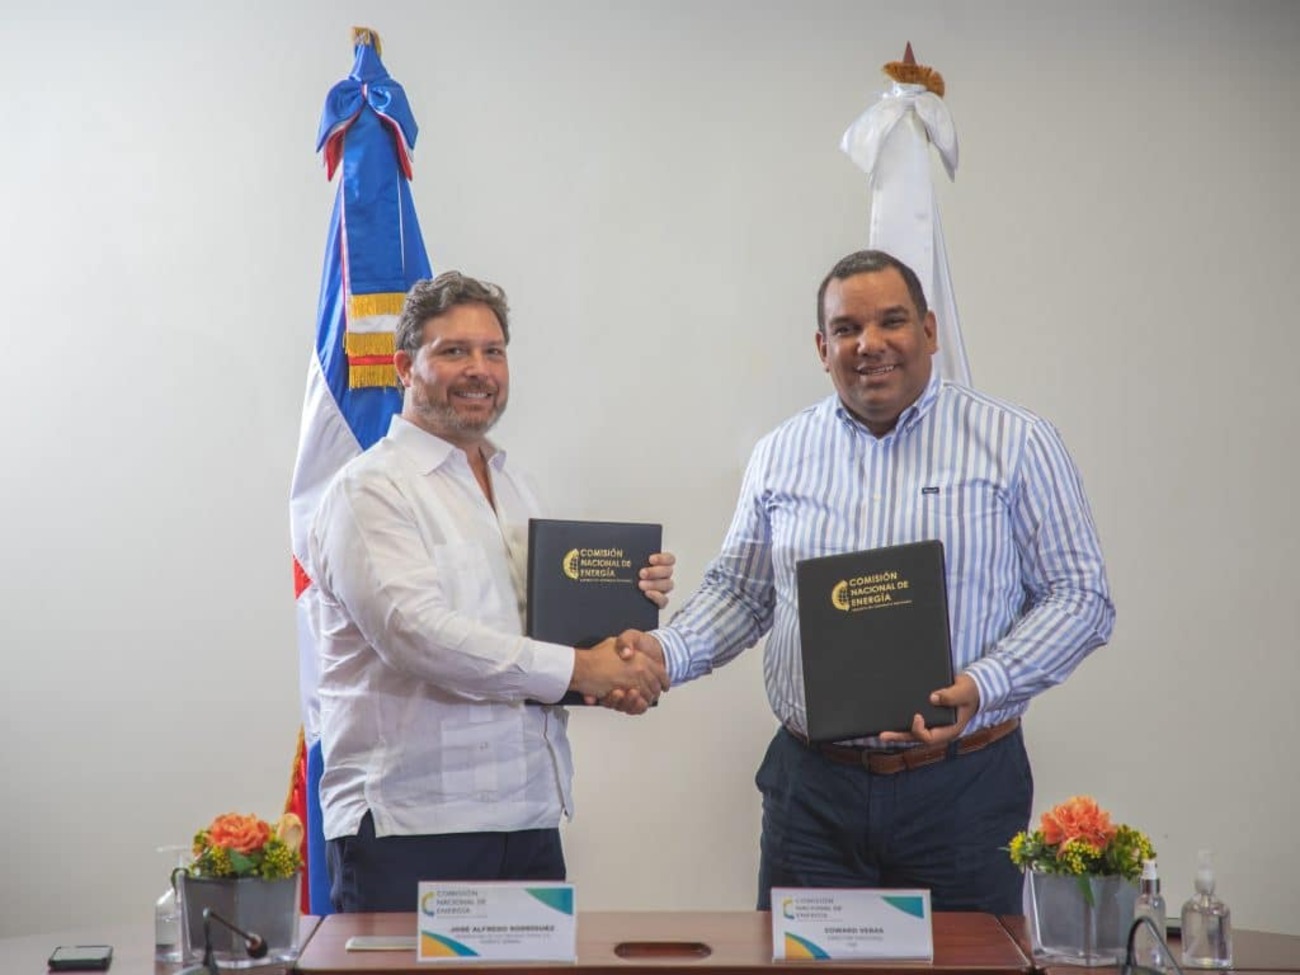 REPÚBLICA DOMINICANA: Concesión definitiva otorgada para el Proyecto Parque Solar Girasol II en República Dominicana